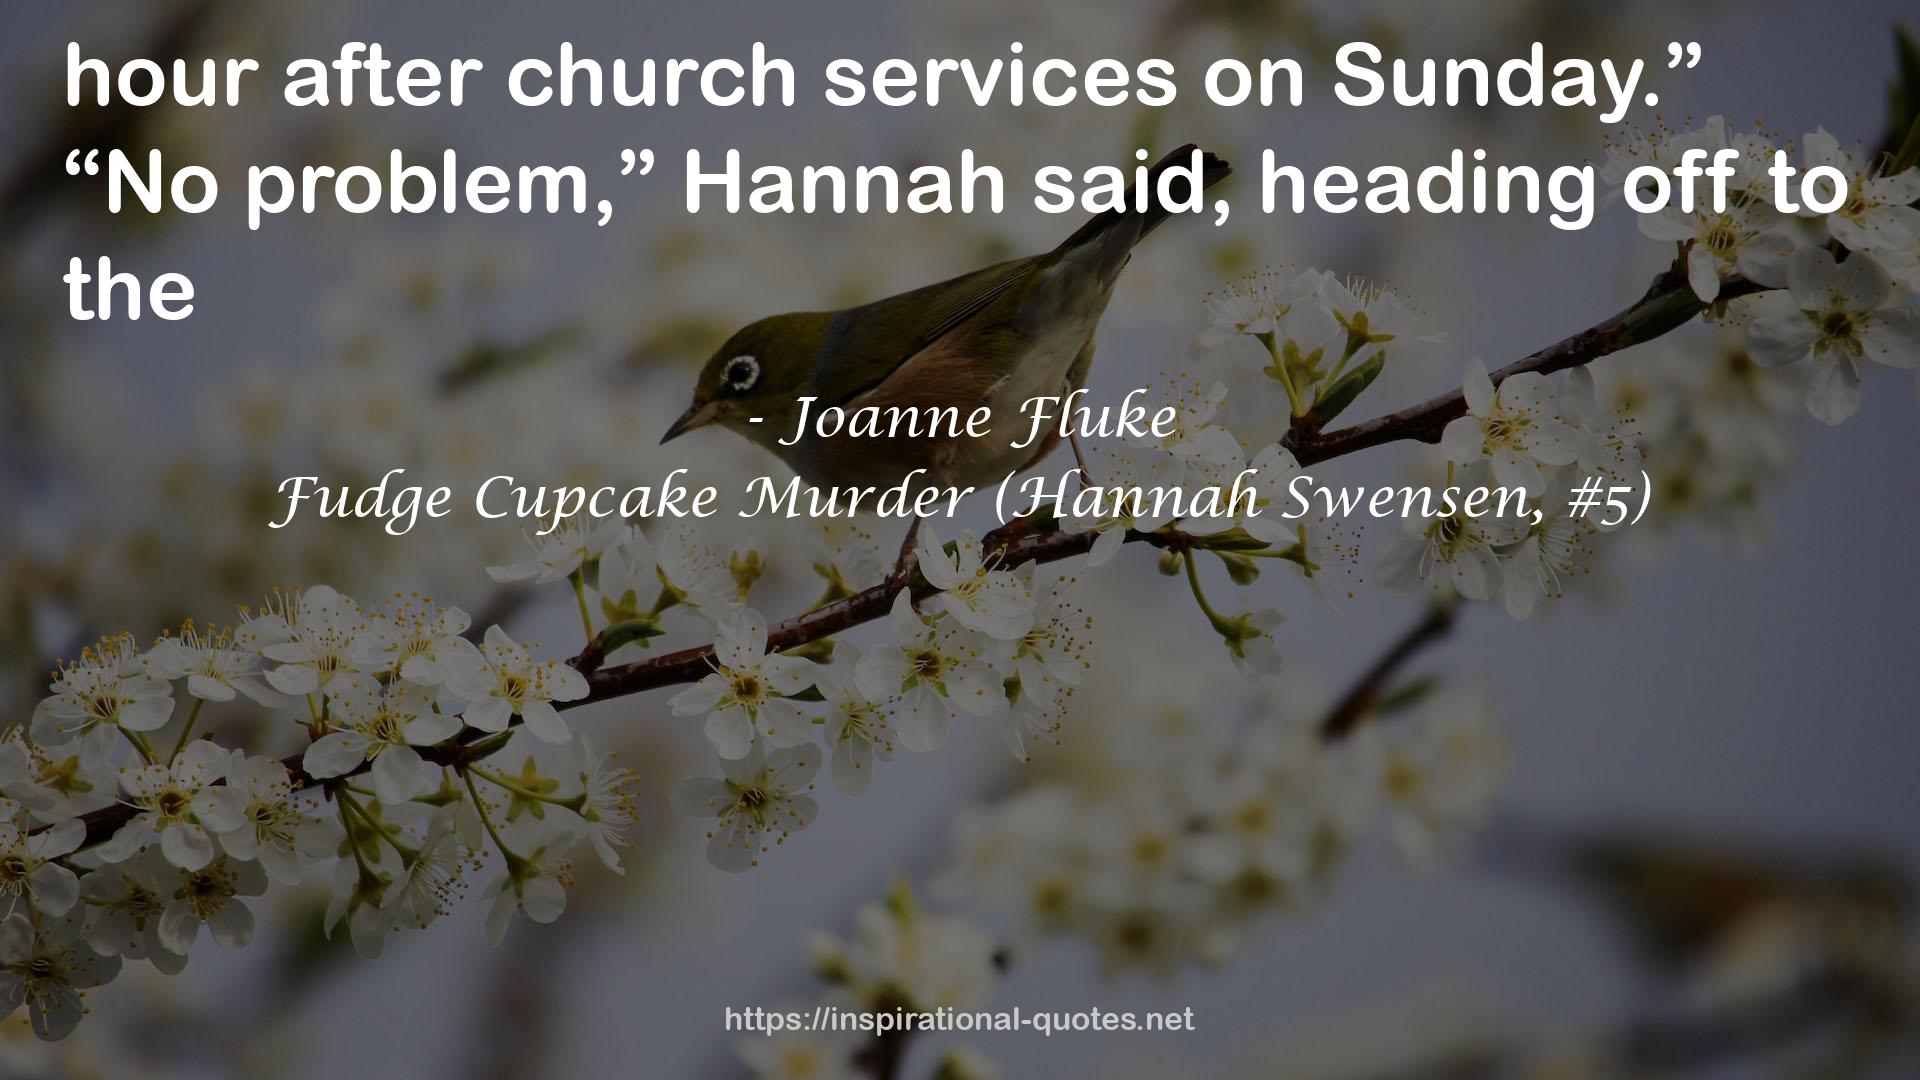 Fudge Cupcake Murder (Hannah Swensen, #5) QUOTES